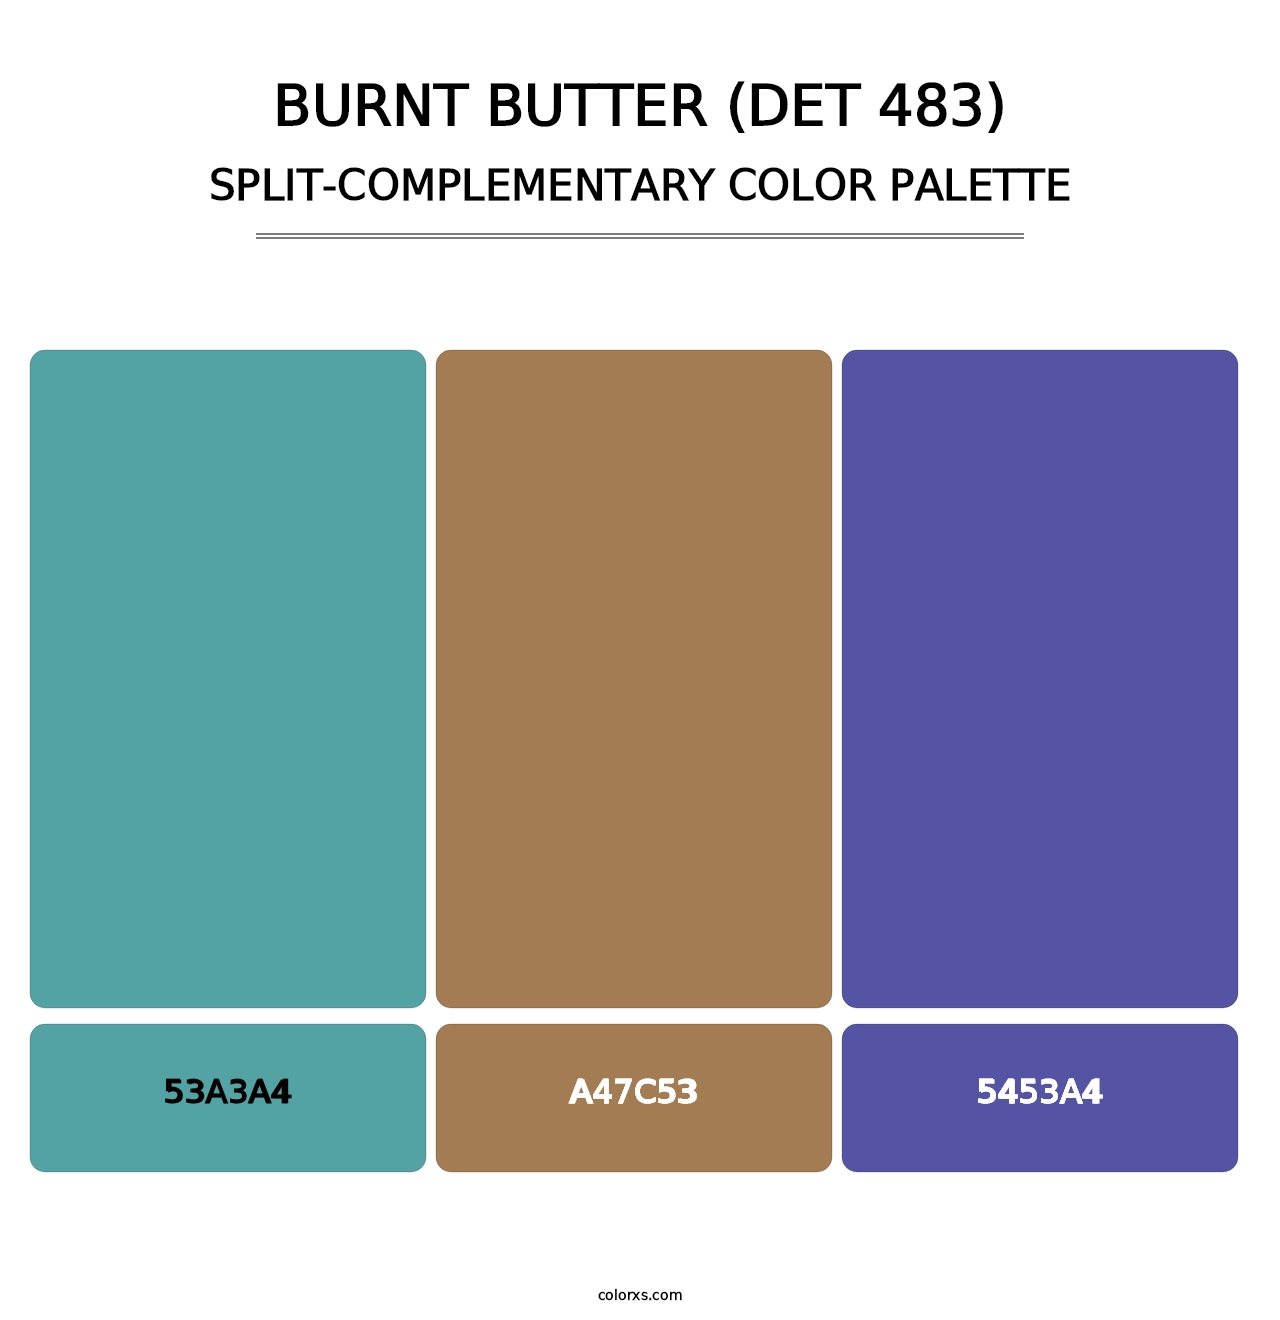 Burnt Butter (DET 483) - Split-Complementary Color Palette